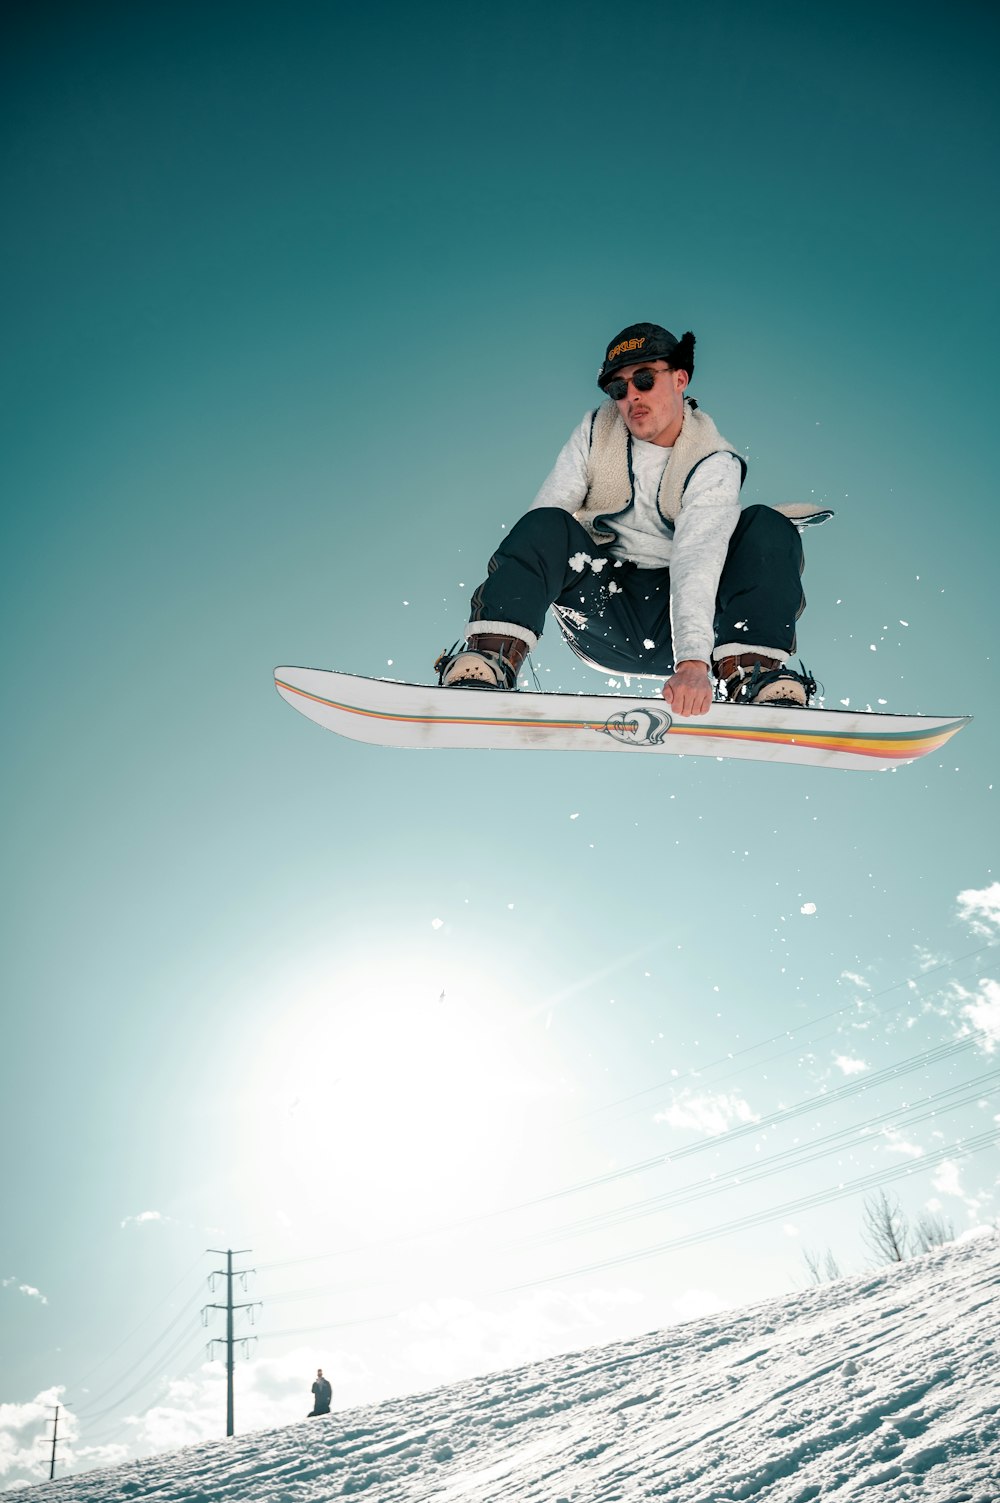 Man in een wit shirt met zwarte broek die zich vast houdt aan zijn snowboard in de lucht.